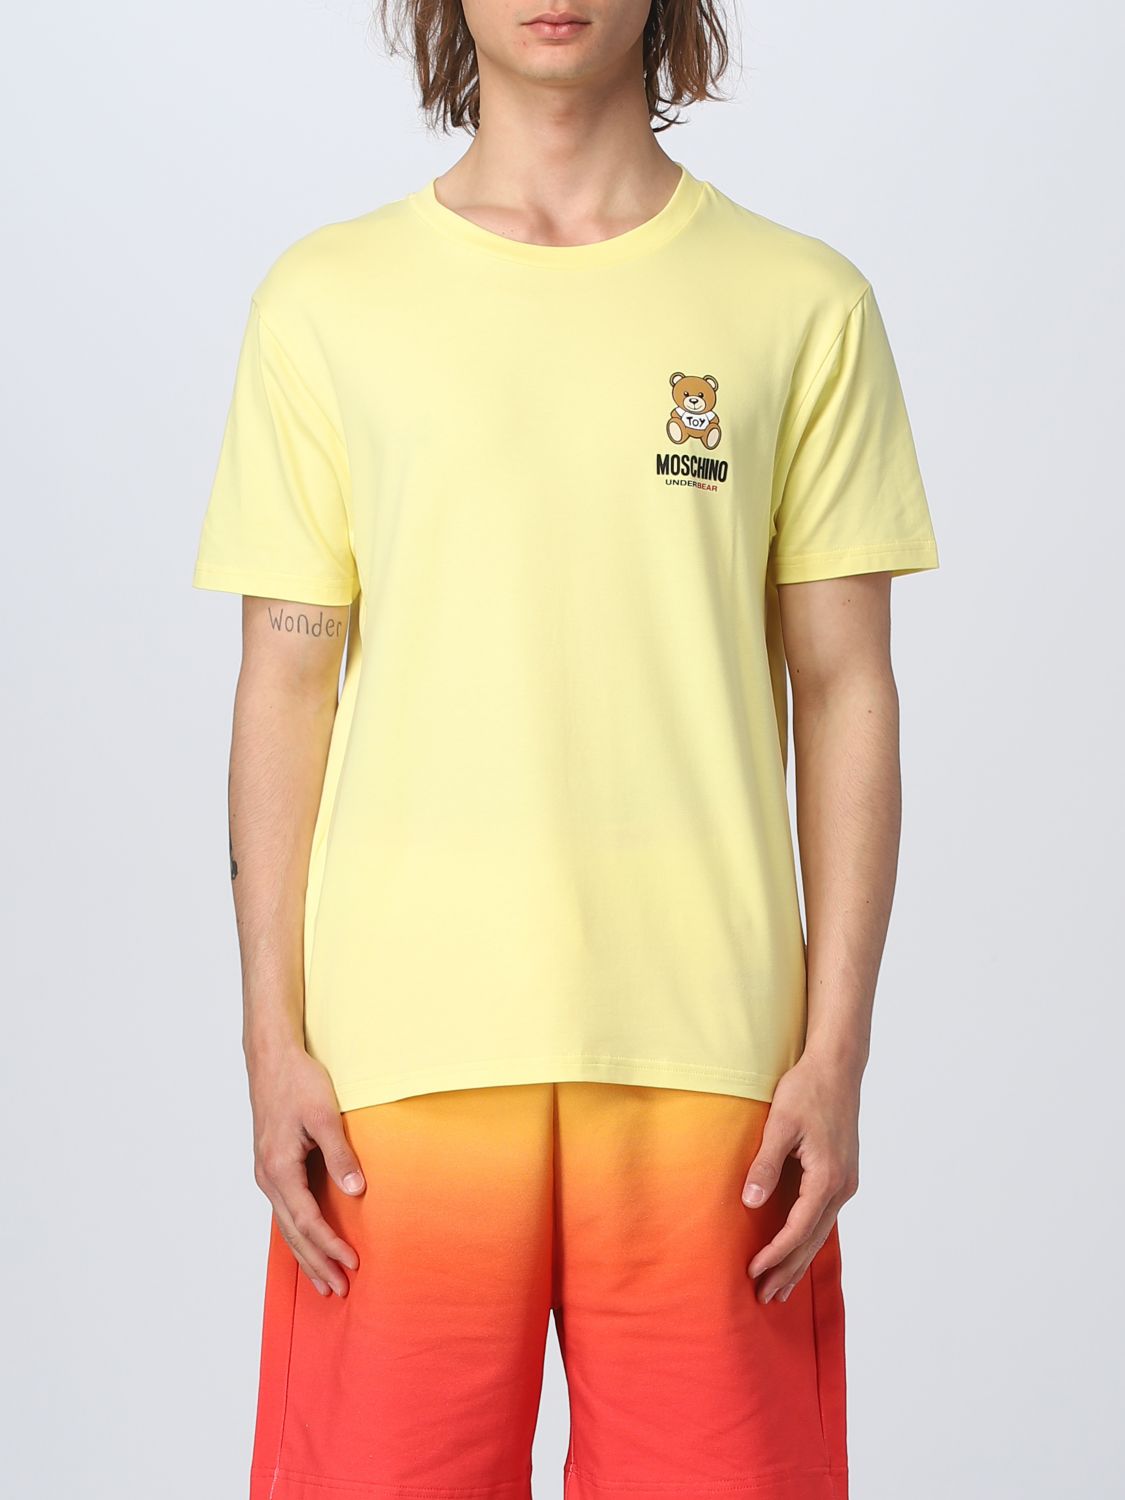 MOSCHINO UNDERWEAR: t-shirt for man - Yellow | Moschino Underwear t ...